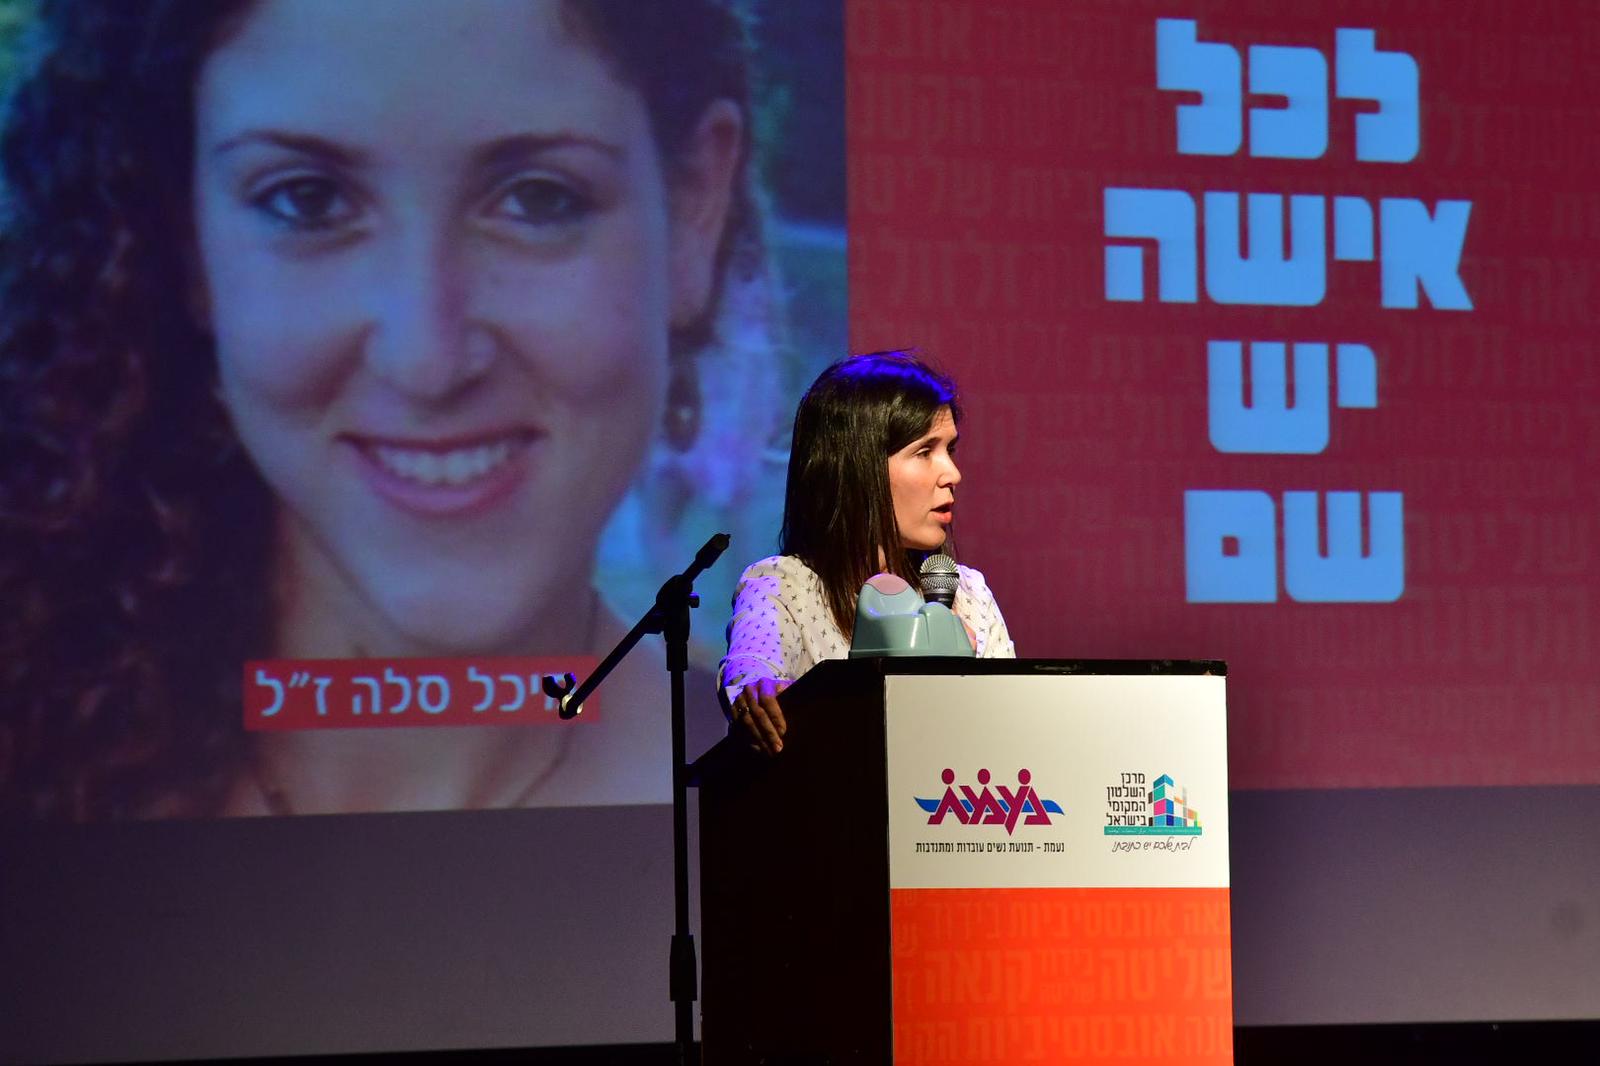 ليلي بن عامي في مؤتمر نعمت لمكافحة العنف ضد المرأة، 18 نوفمبر 2019 (تصوير: إسرائيل مالوفاني)